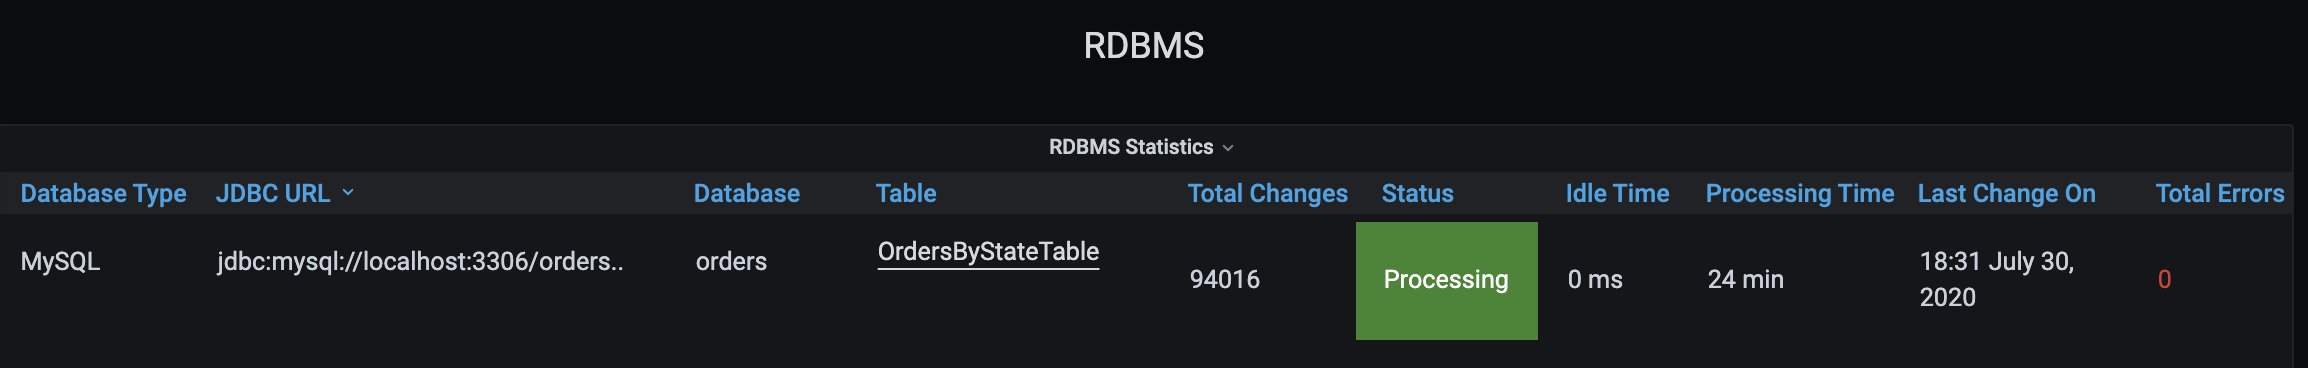 RDBMS Statistics